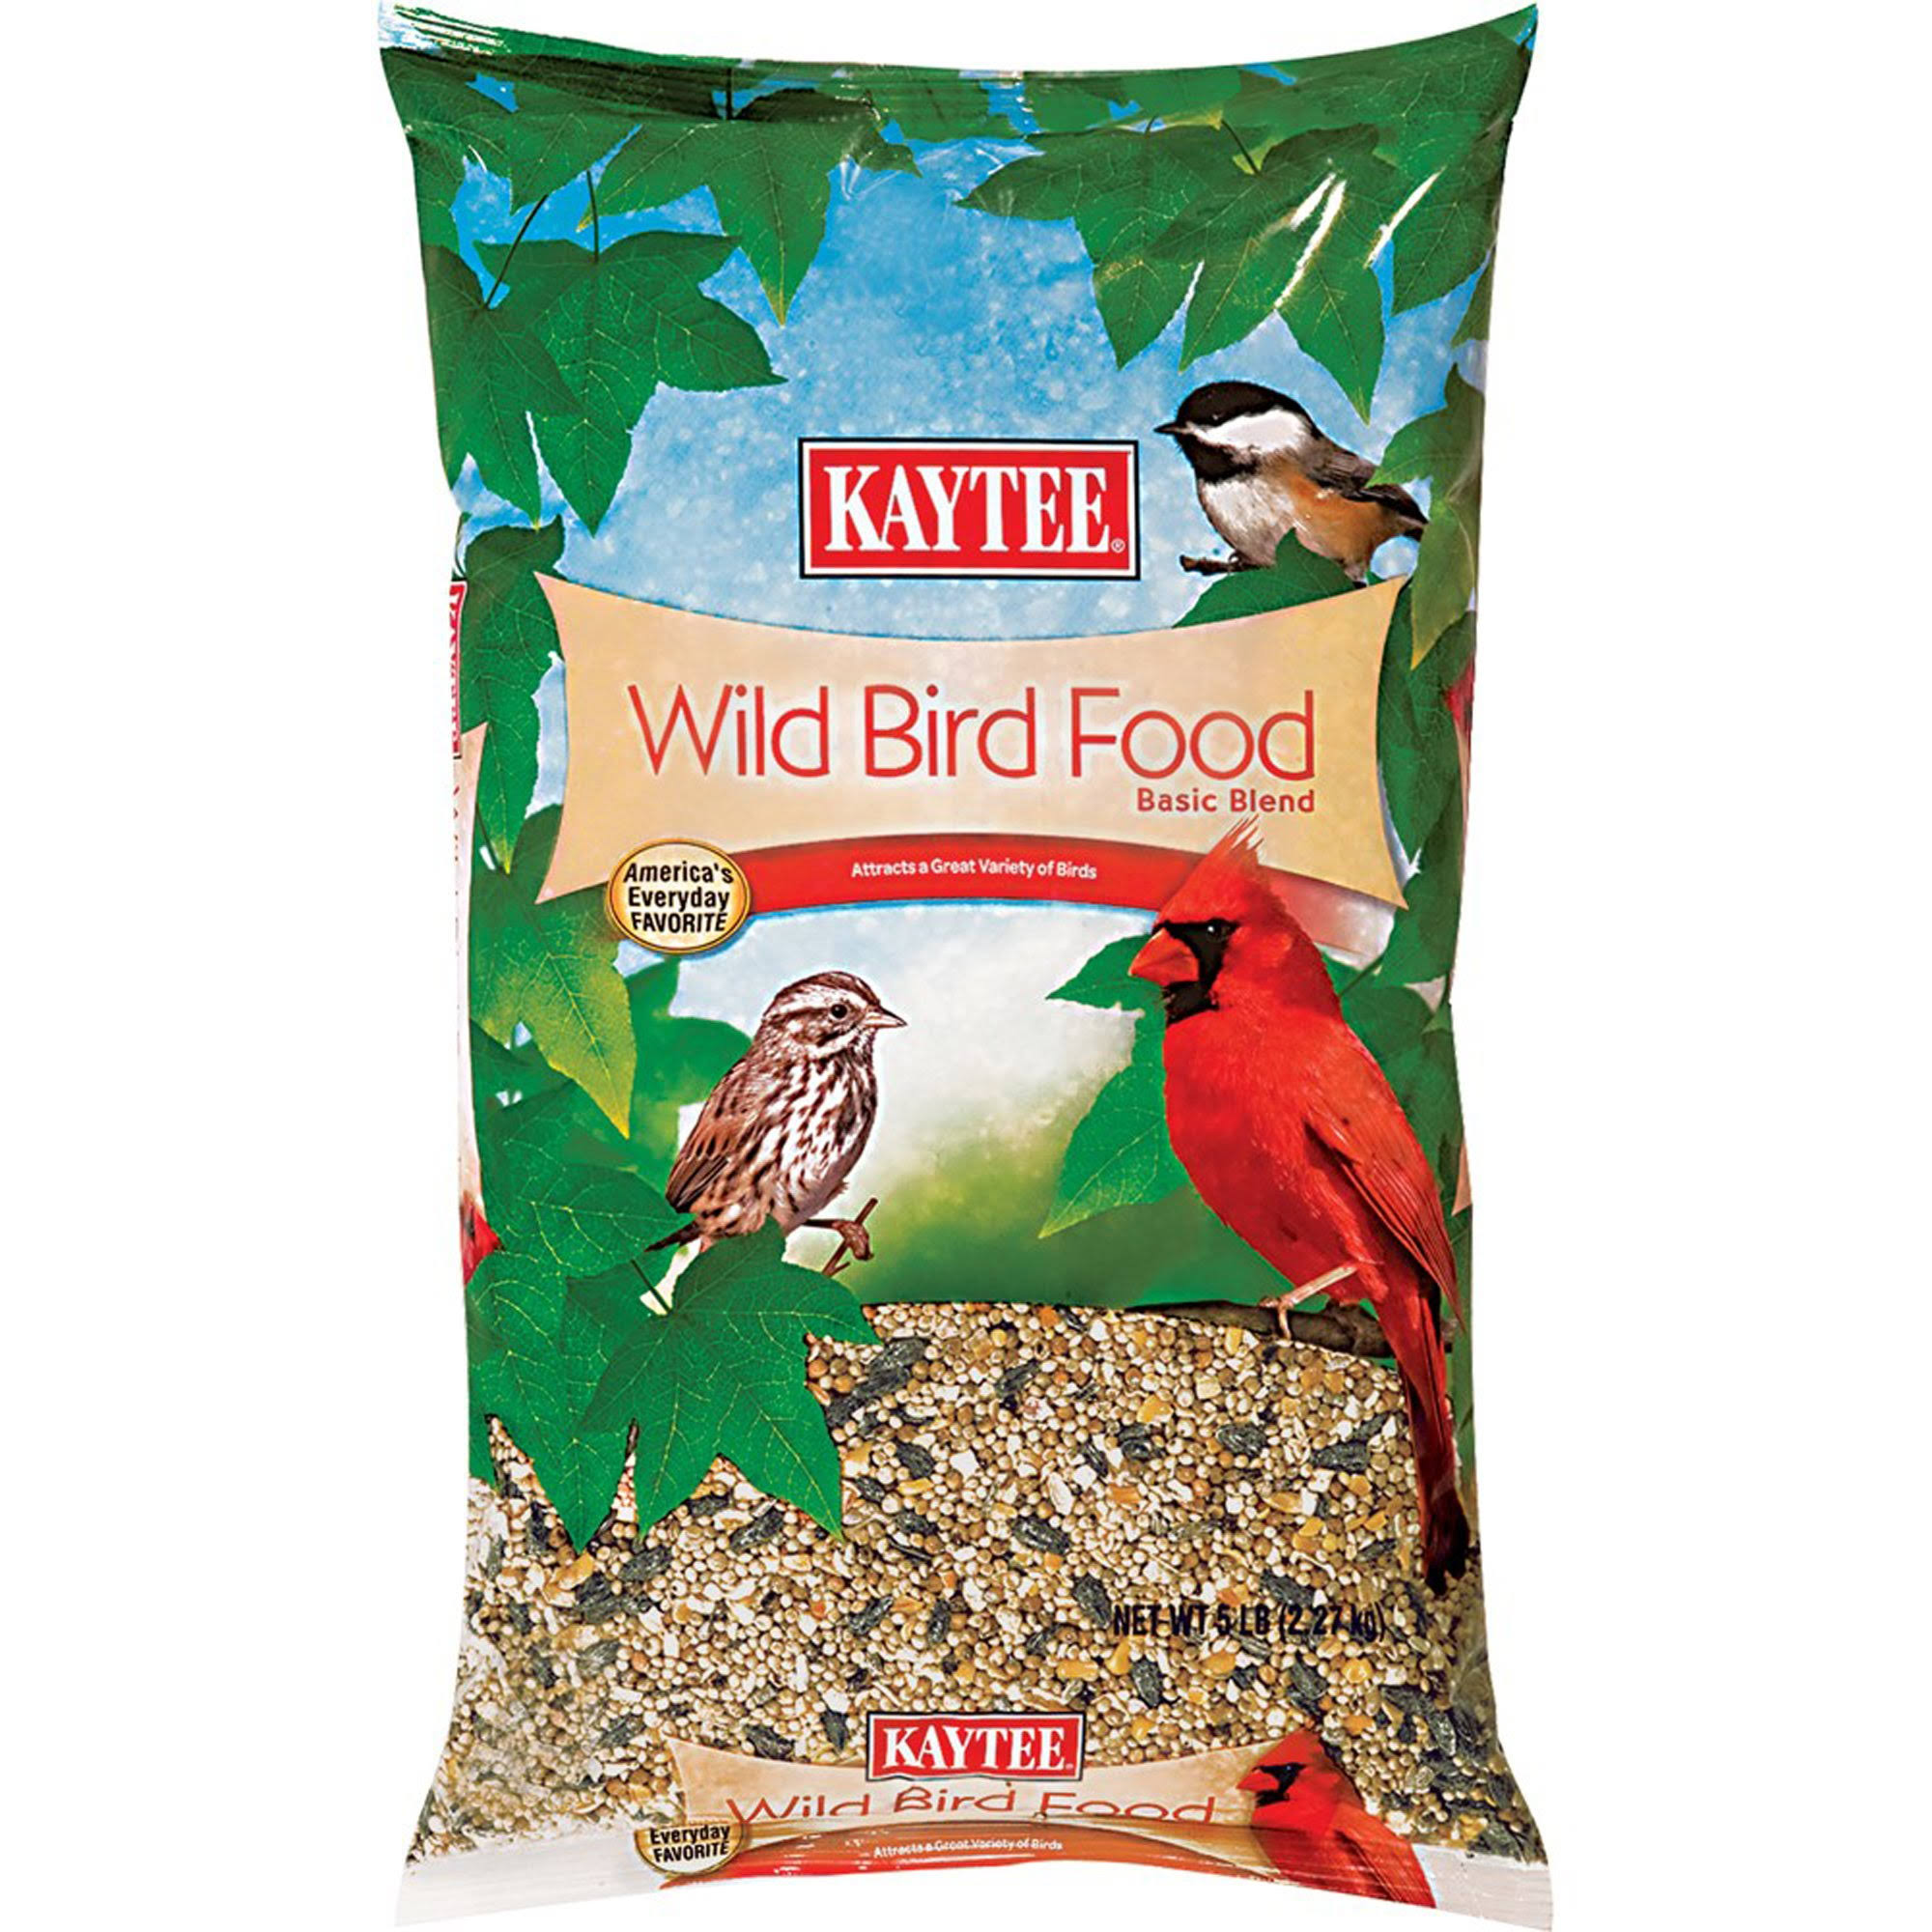 Kaytee Wild Bird Food - 5 lb bag